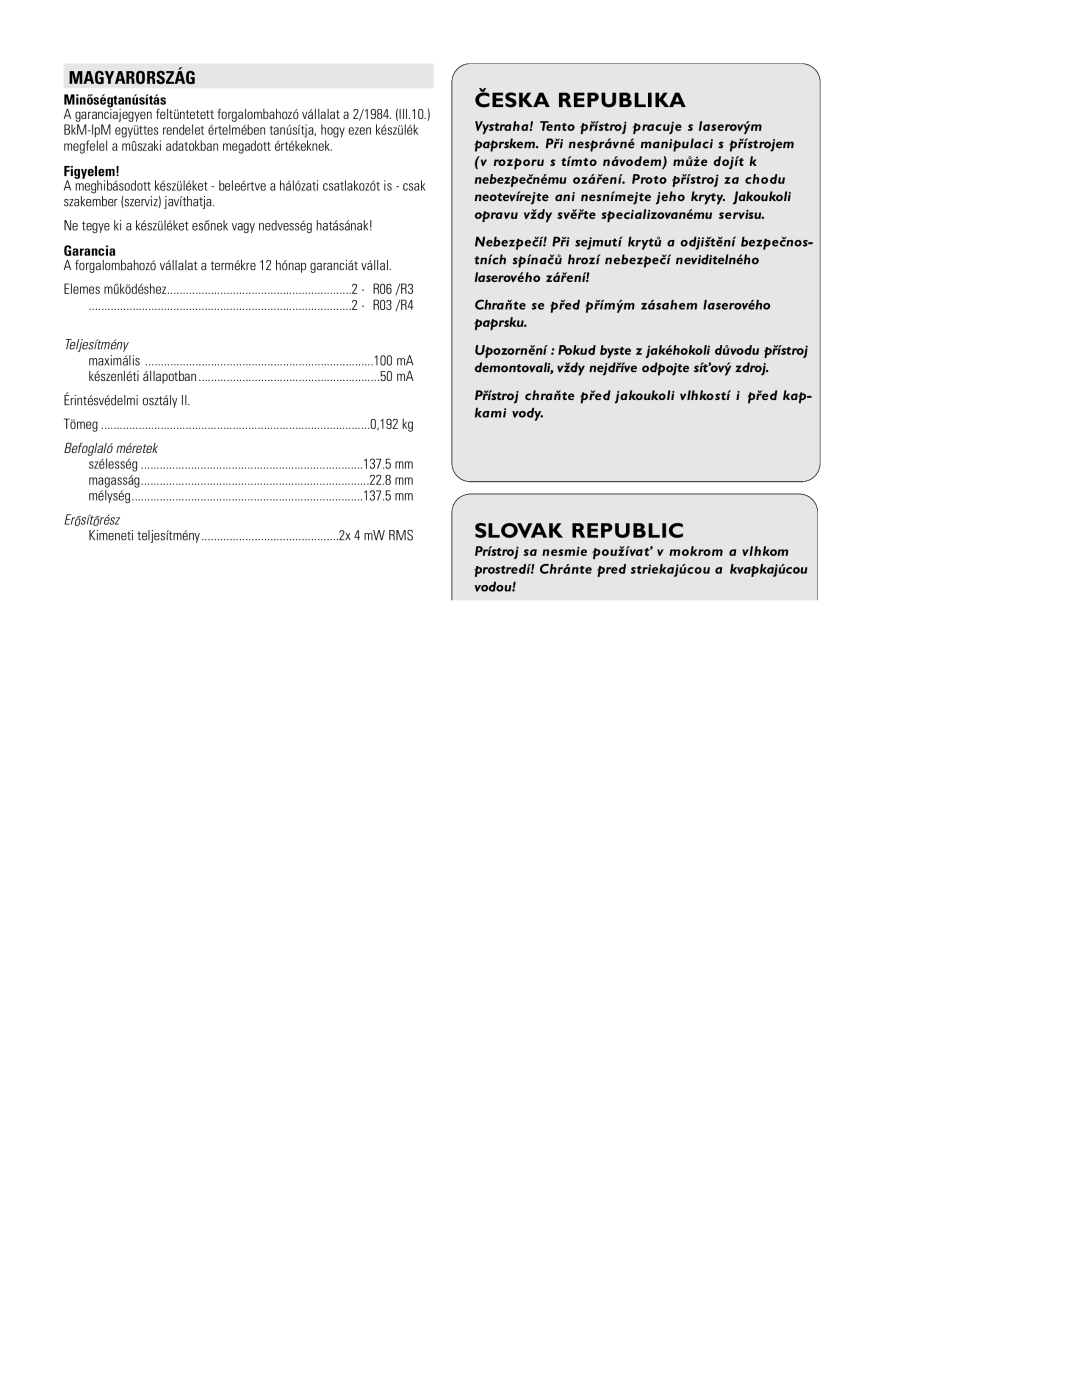 Philips EXP3361 manual Minõségtanúsítás, Figyelem, Garancia, Teljesítmény, Befoglaló méretek, Erõsítõrész, Česka Republika 